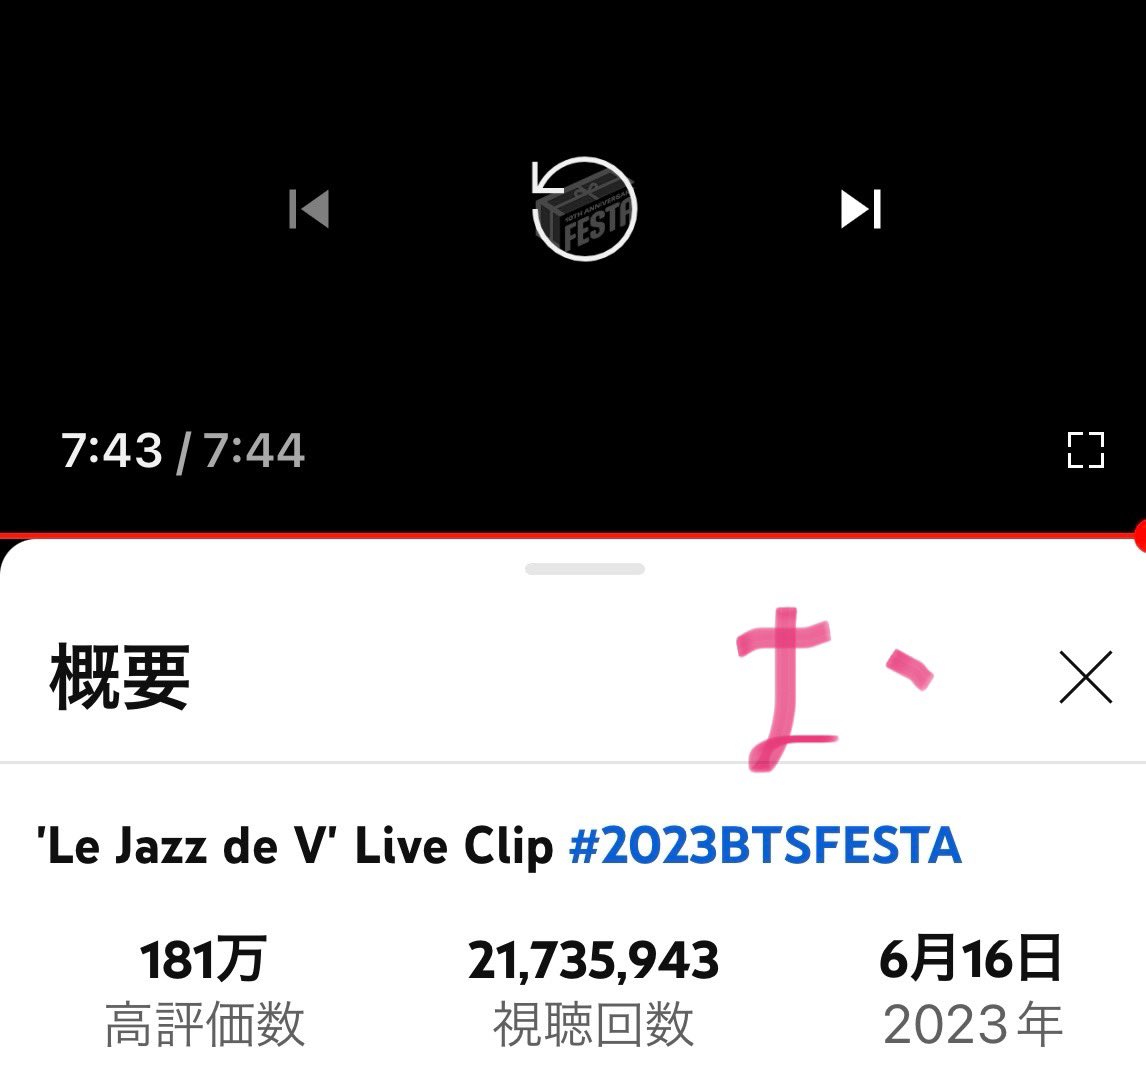 《LeJazz de V》
ホント大好きな声🥰💜
3時のコーヒー☕️に
ピッタリ🥰💜

'Le Jazz de V' Live Clip #2023BTSFESTA youtu.be/SUNnMsq8OKU?si… @YouTubeより